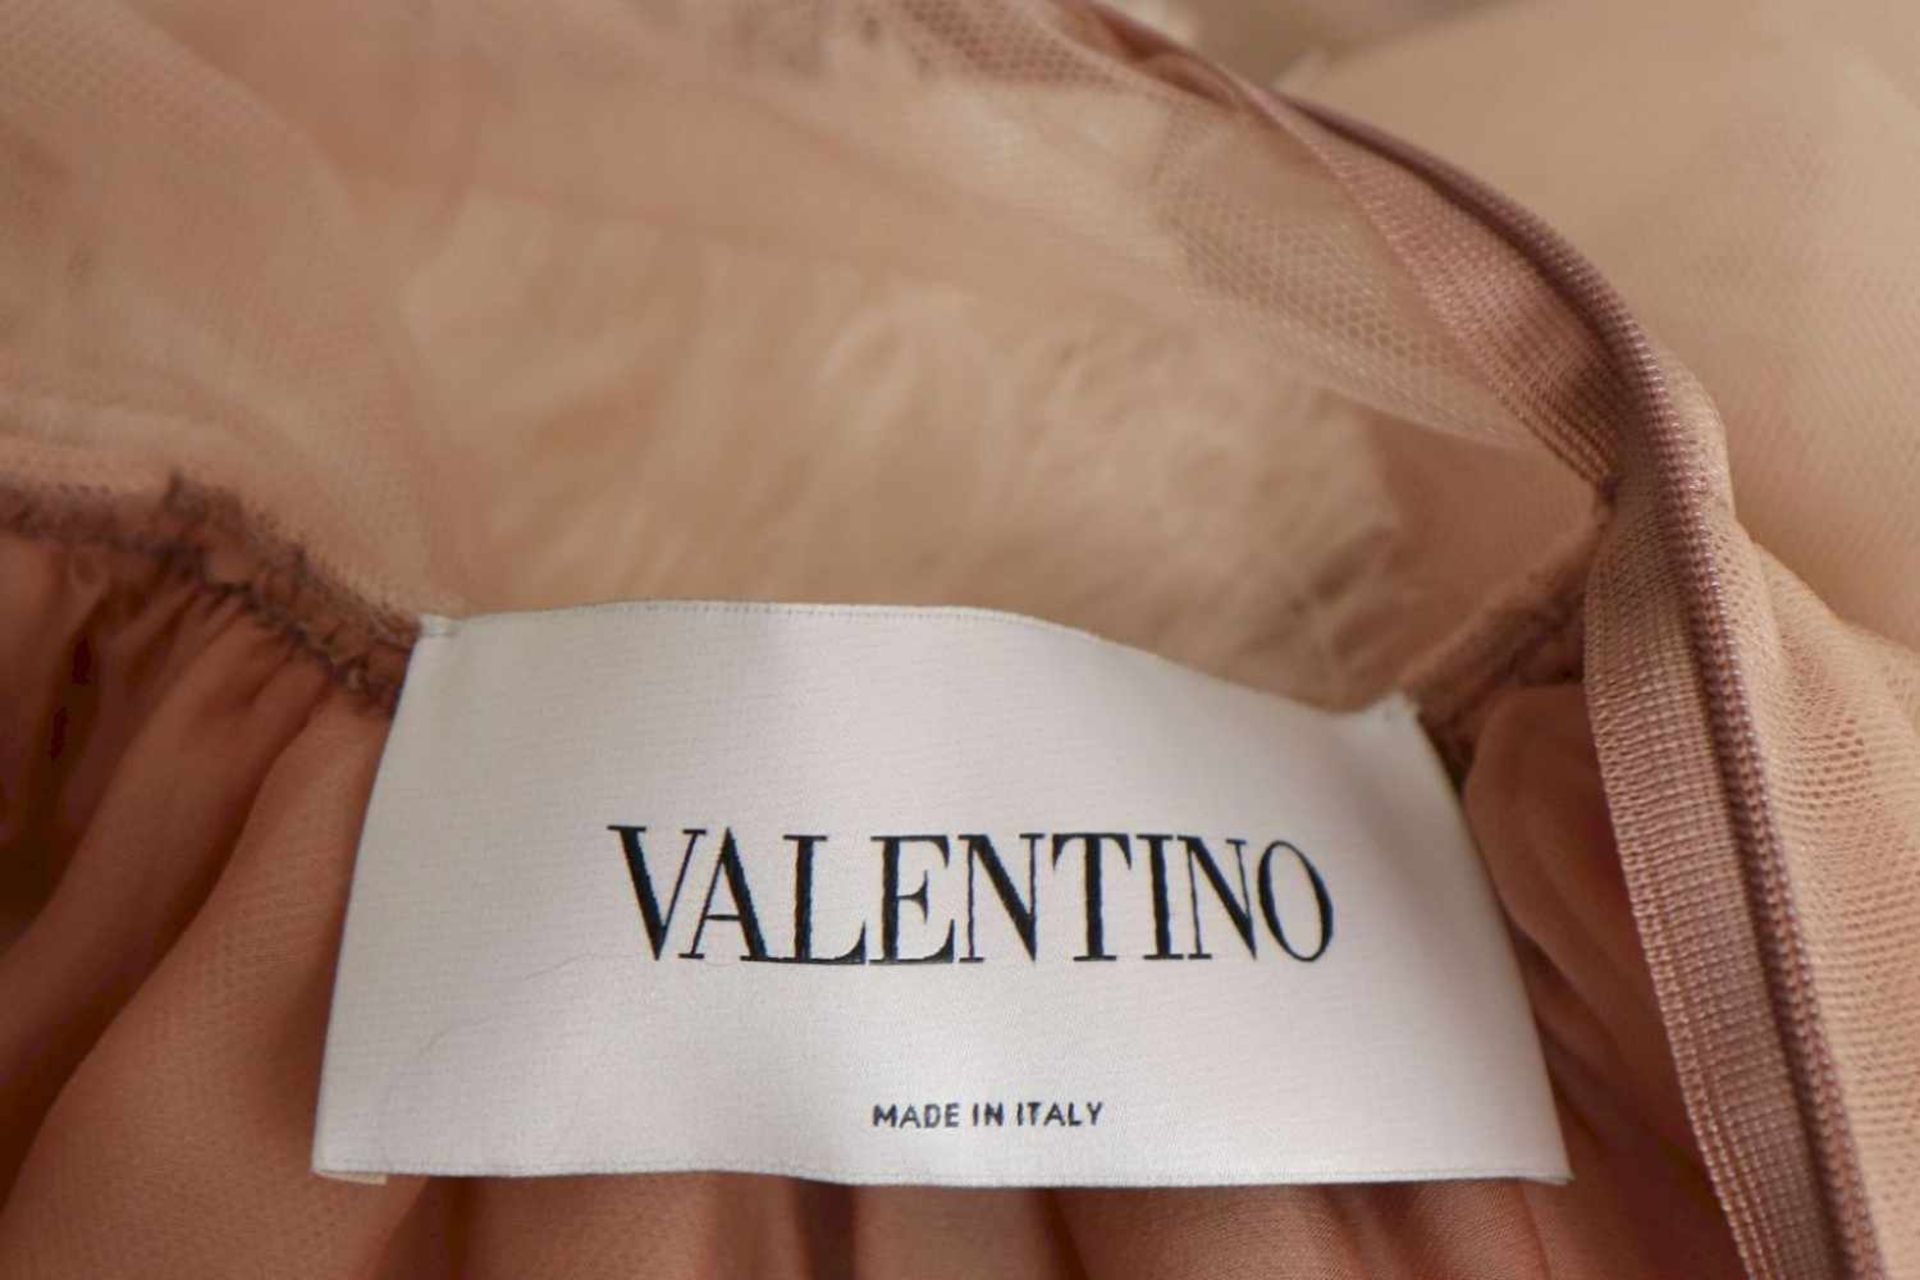 VALENTINO Abendkleidlanges Kleid aus nudefarbenem, üppig besticktem Polyamid-Stoff mit weißem Feder- - Bild 3 aus 3